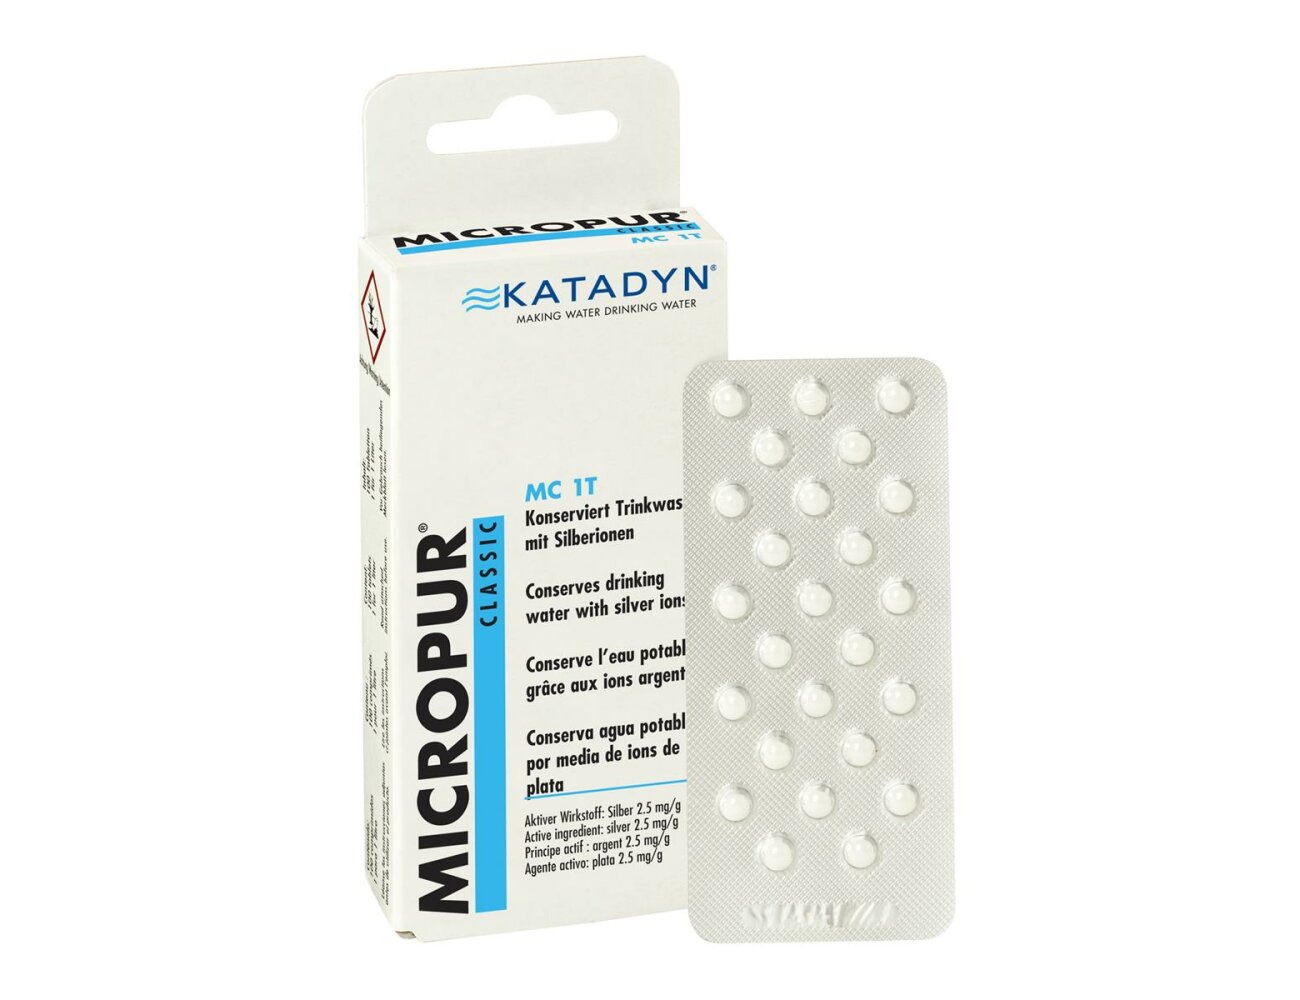 Katadyn Micropur Classic MC 1T, 100 Tab